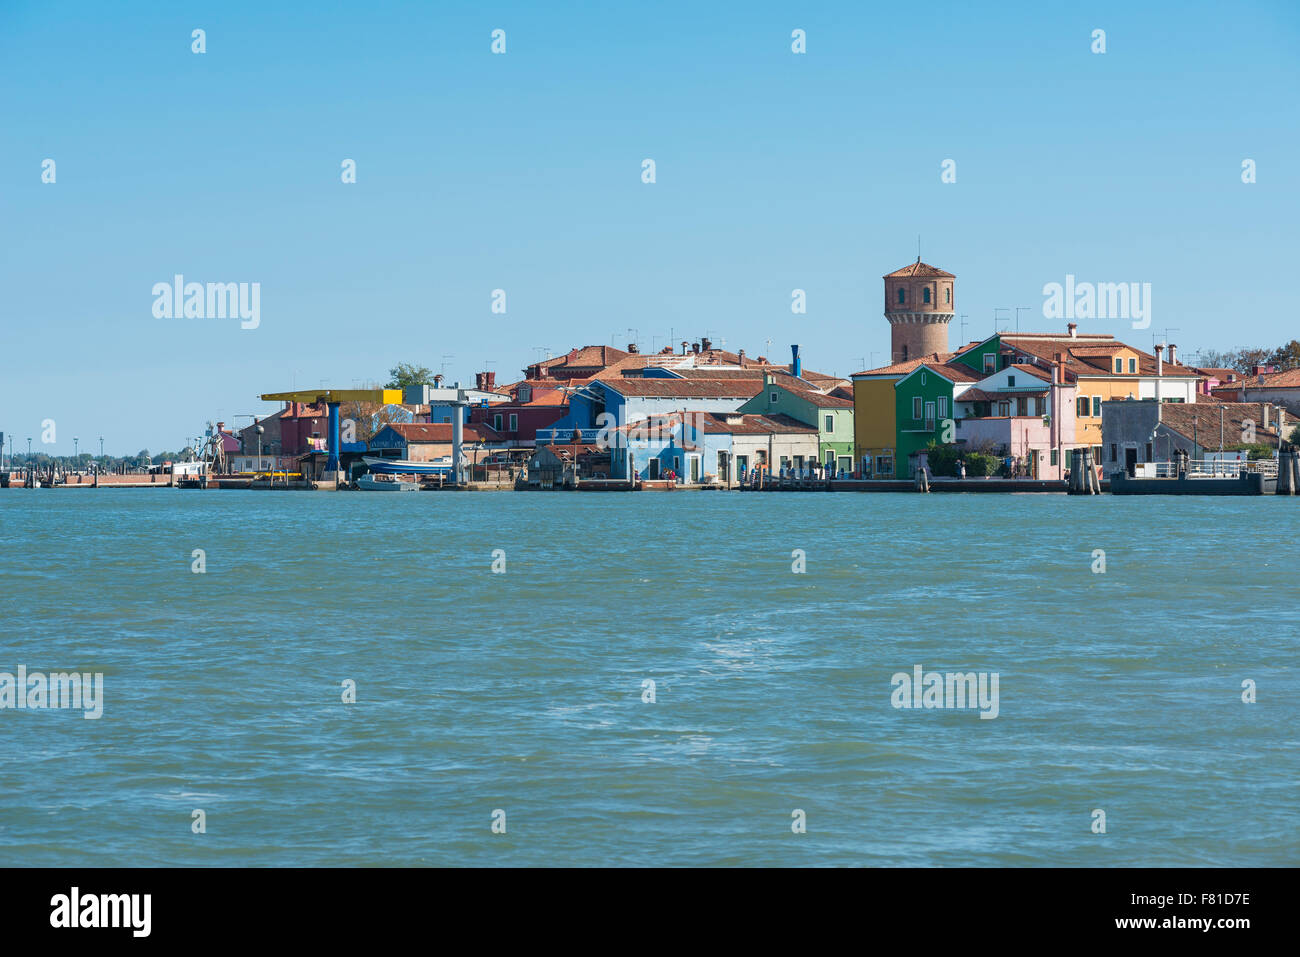 Burano, Venetian Lagoon, Venice, Veneto, Italy Stock Photo